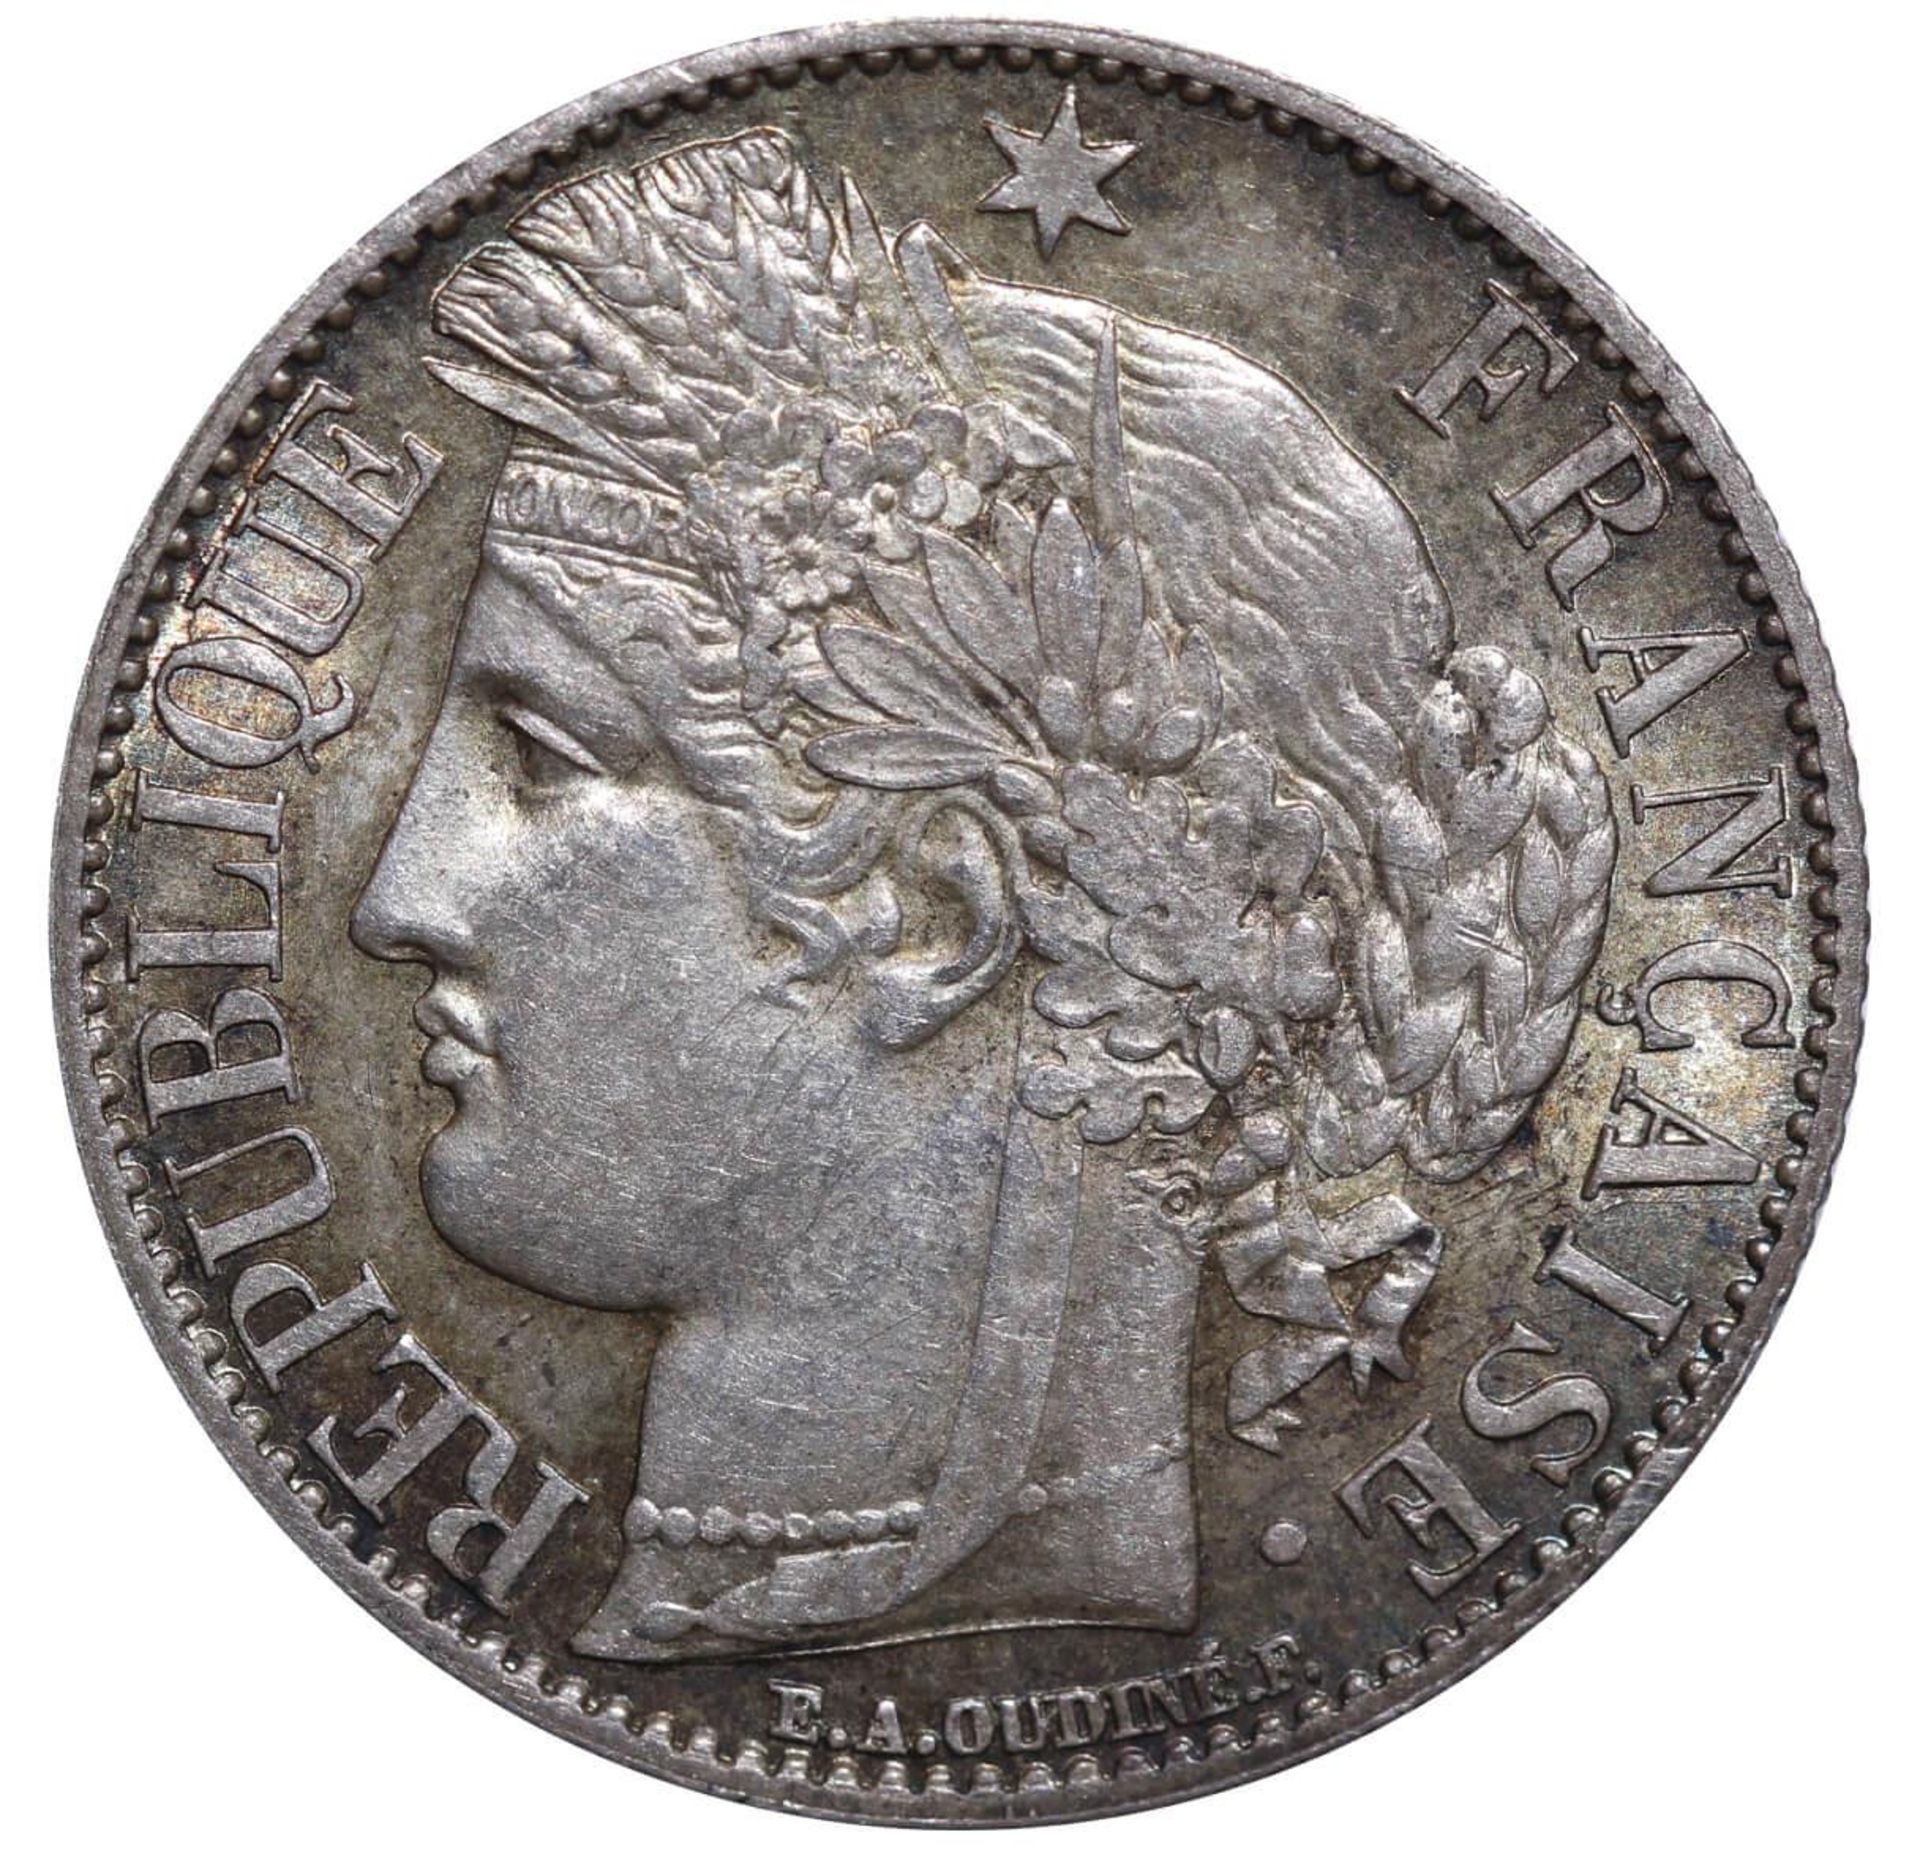 France, 1 Franc, 1872 year, K - Image 2 of 3